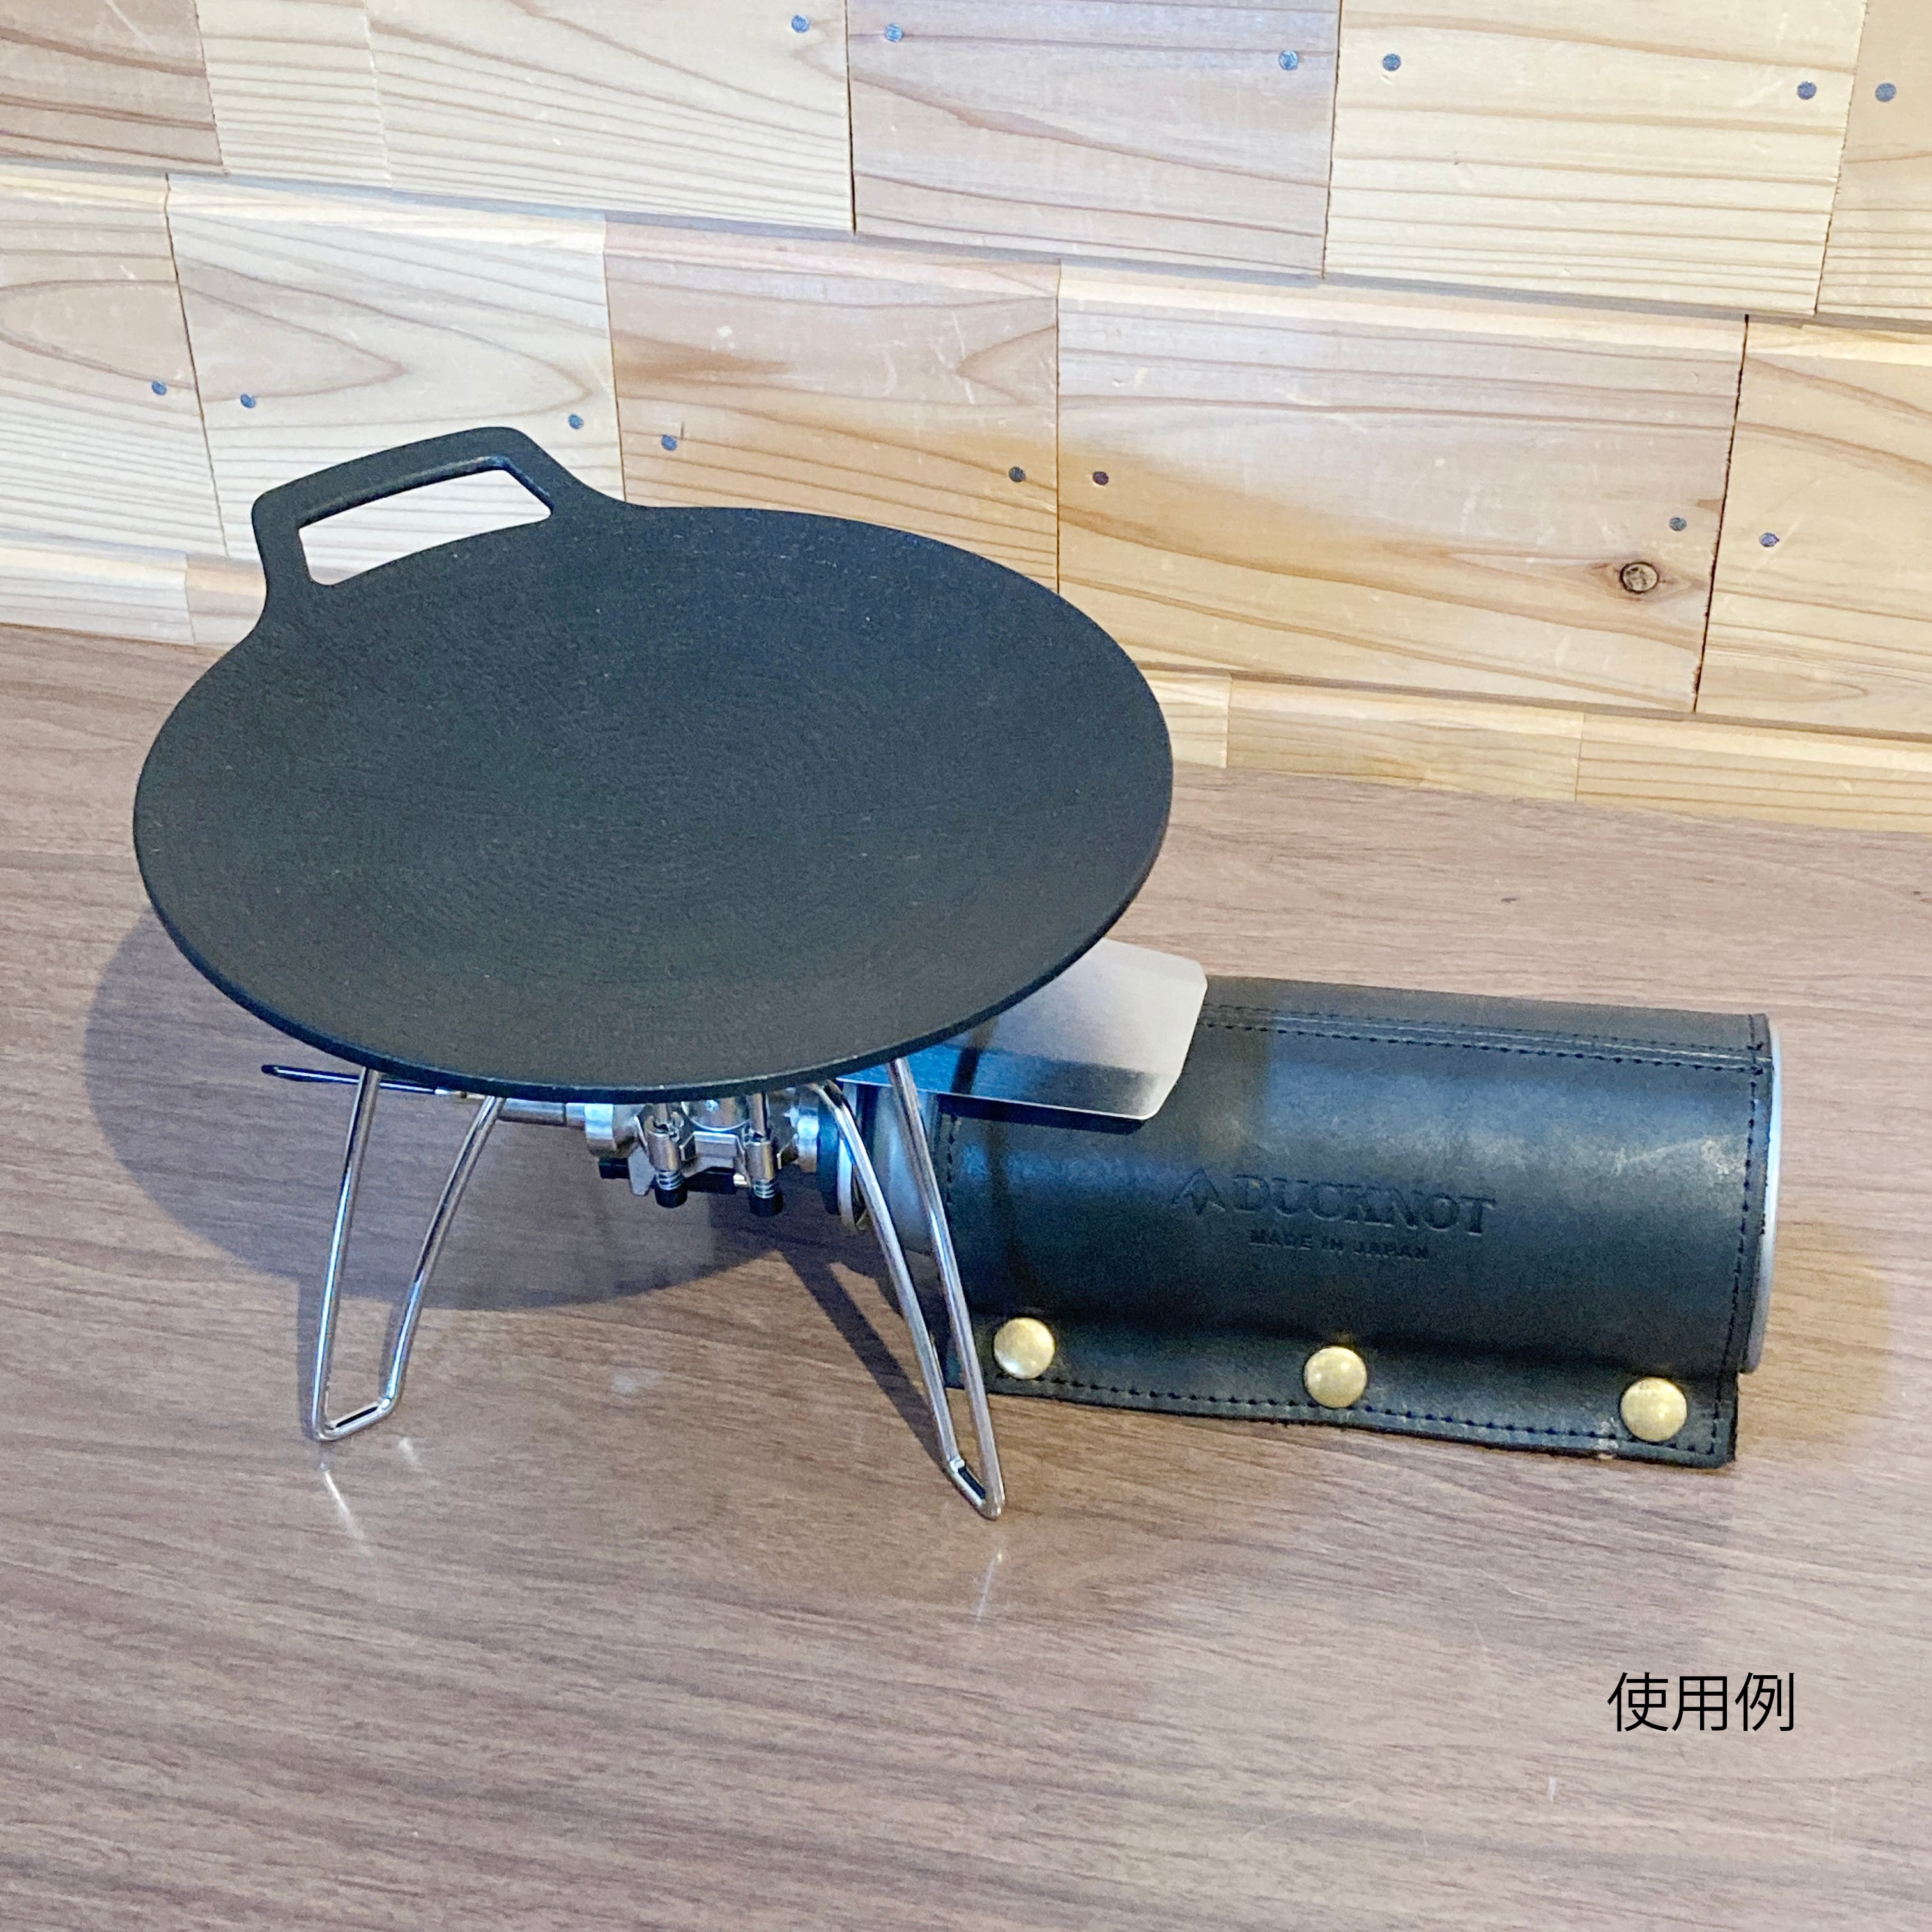 鉄板マルチグリドル 19cm - JHQ | OutdoorLife kano